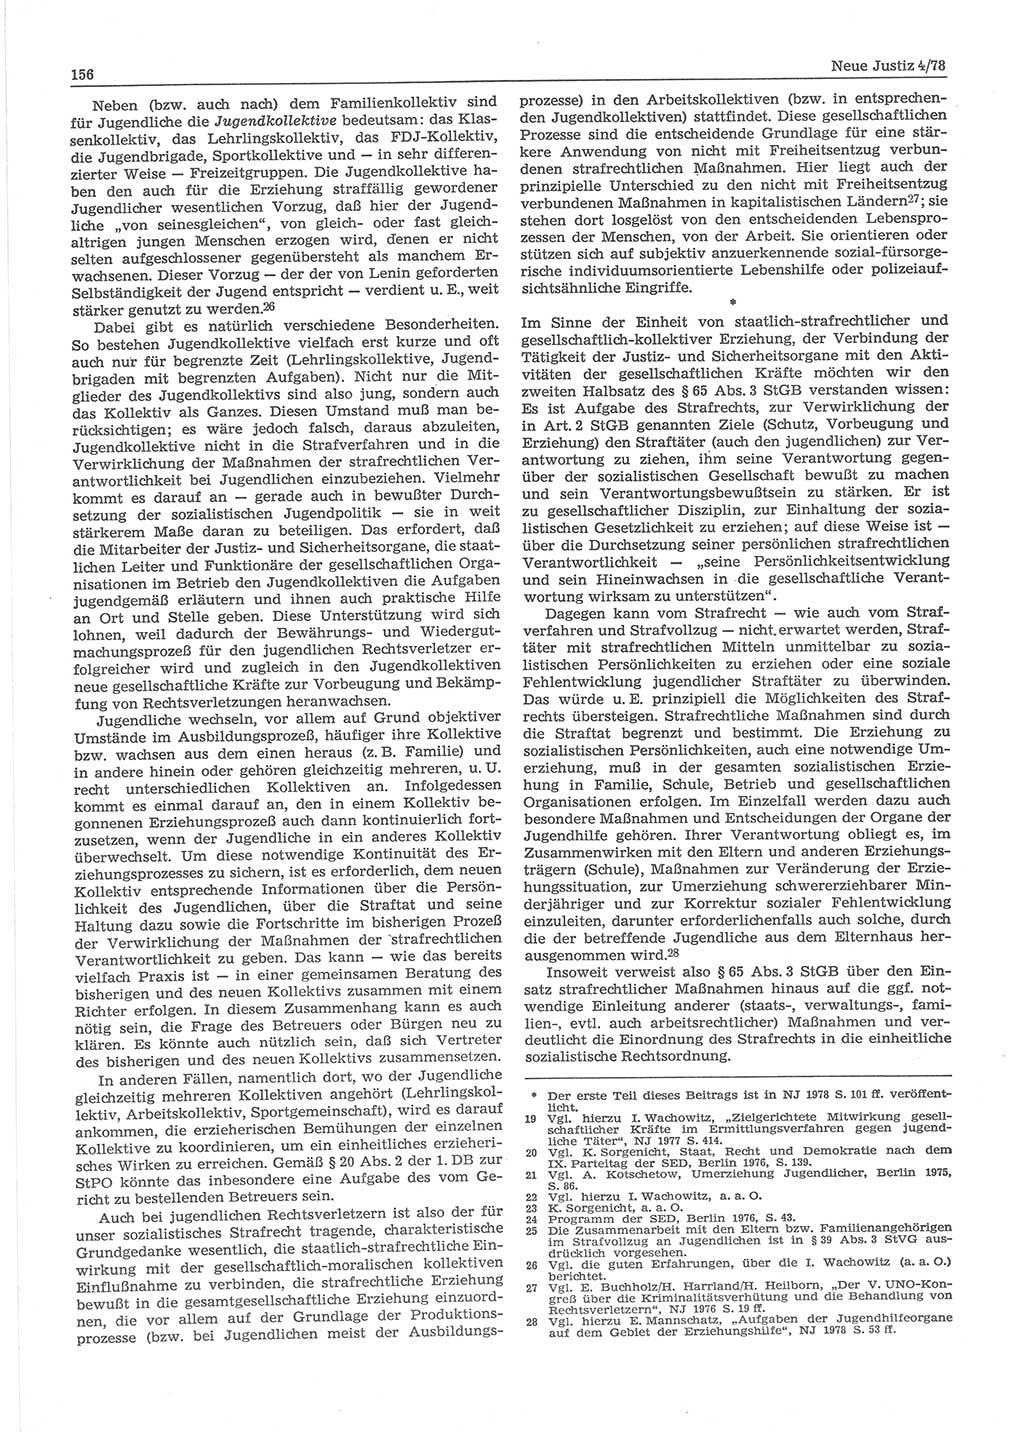 Neue Justiz (NJ), Zeitschrift für sozialistisches Recht und Gesetzlichkeit [Deutsche Demokratische Republik (DDR)], 32. Jahrgang 1978, Seite 156 (NJ DDR 1978, S. 156)